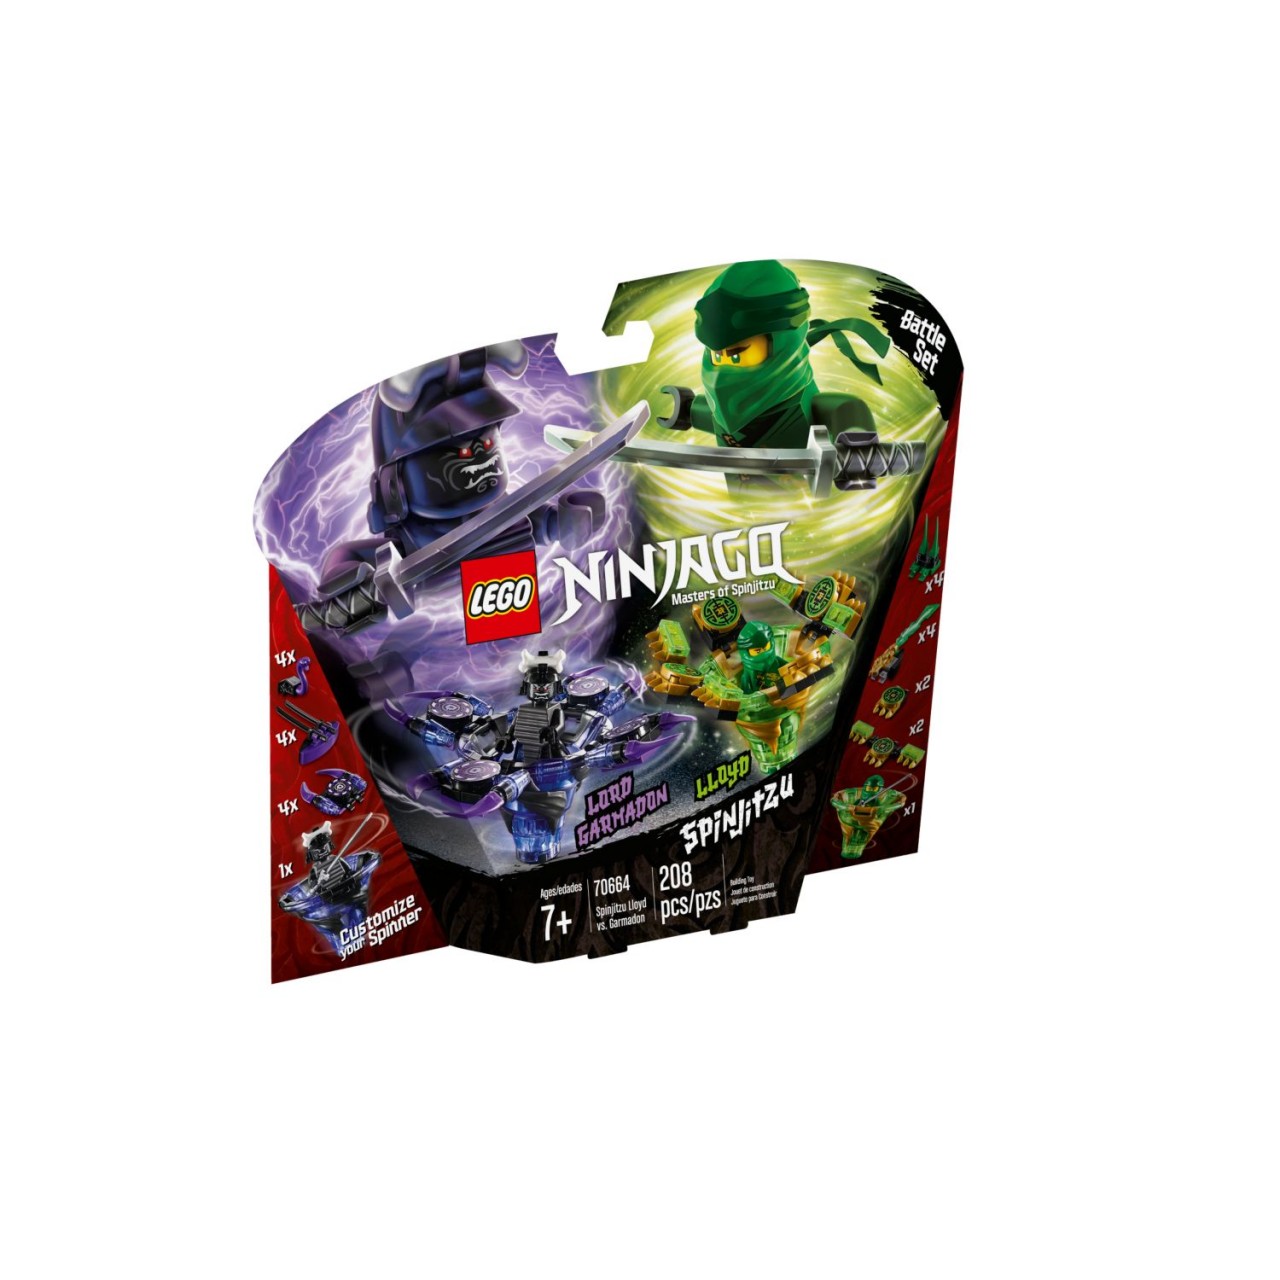 LEGO NINJAGO 70664 Spinjitzu Lloyd vs. Garmadon